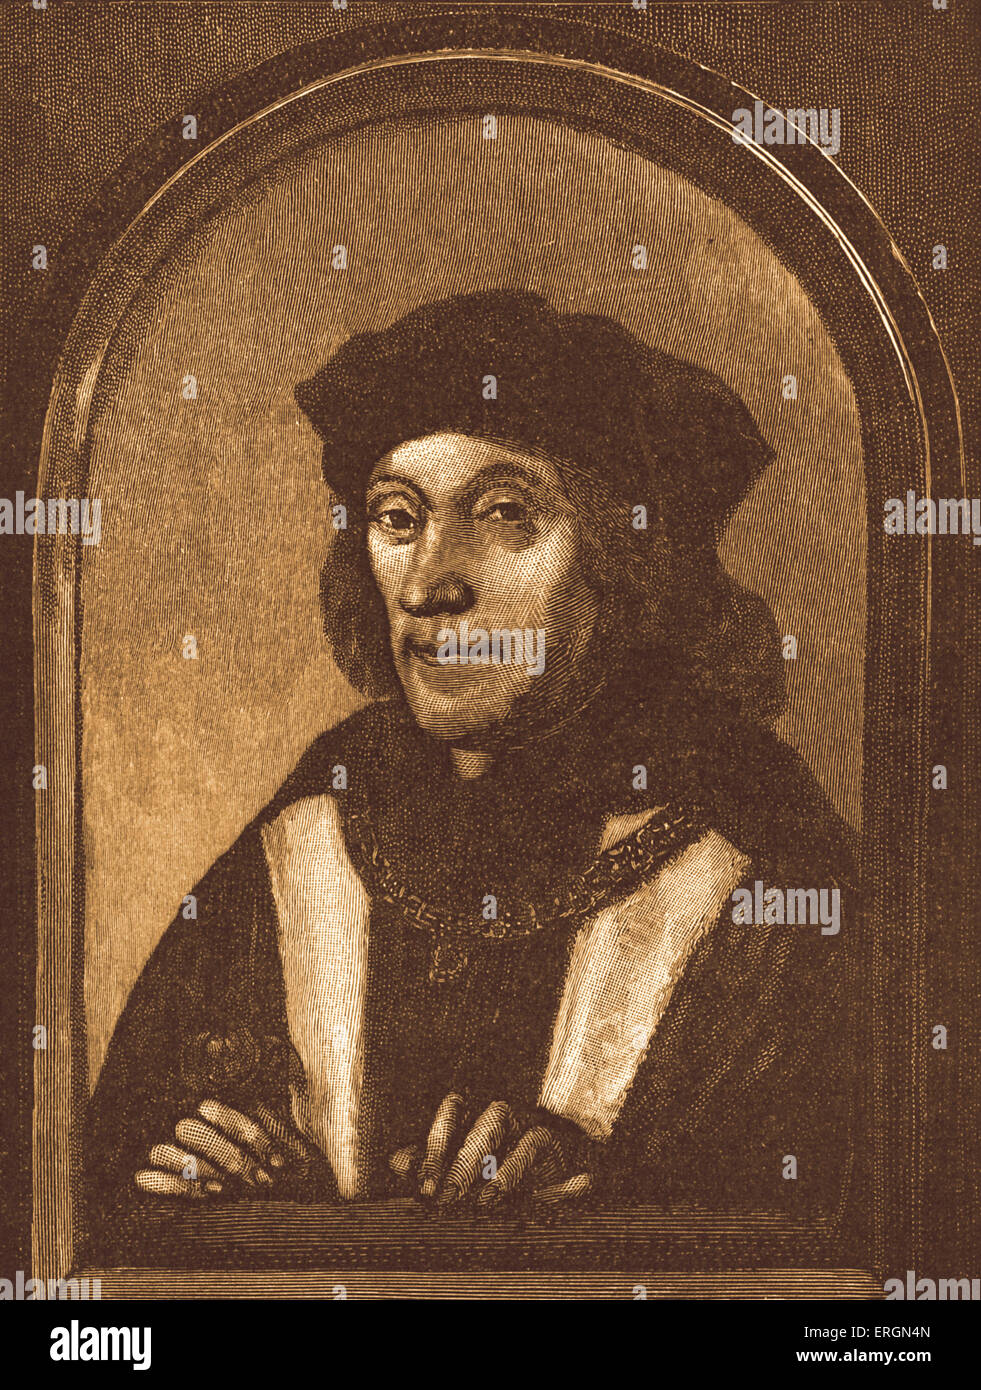 Enrico VII (1457-1509) - Re d'Inghilterra (1485-1509)- primo monarca della Casa di Tudor. Foto Stock